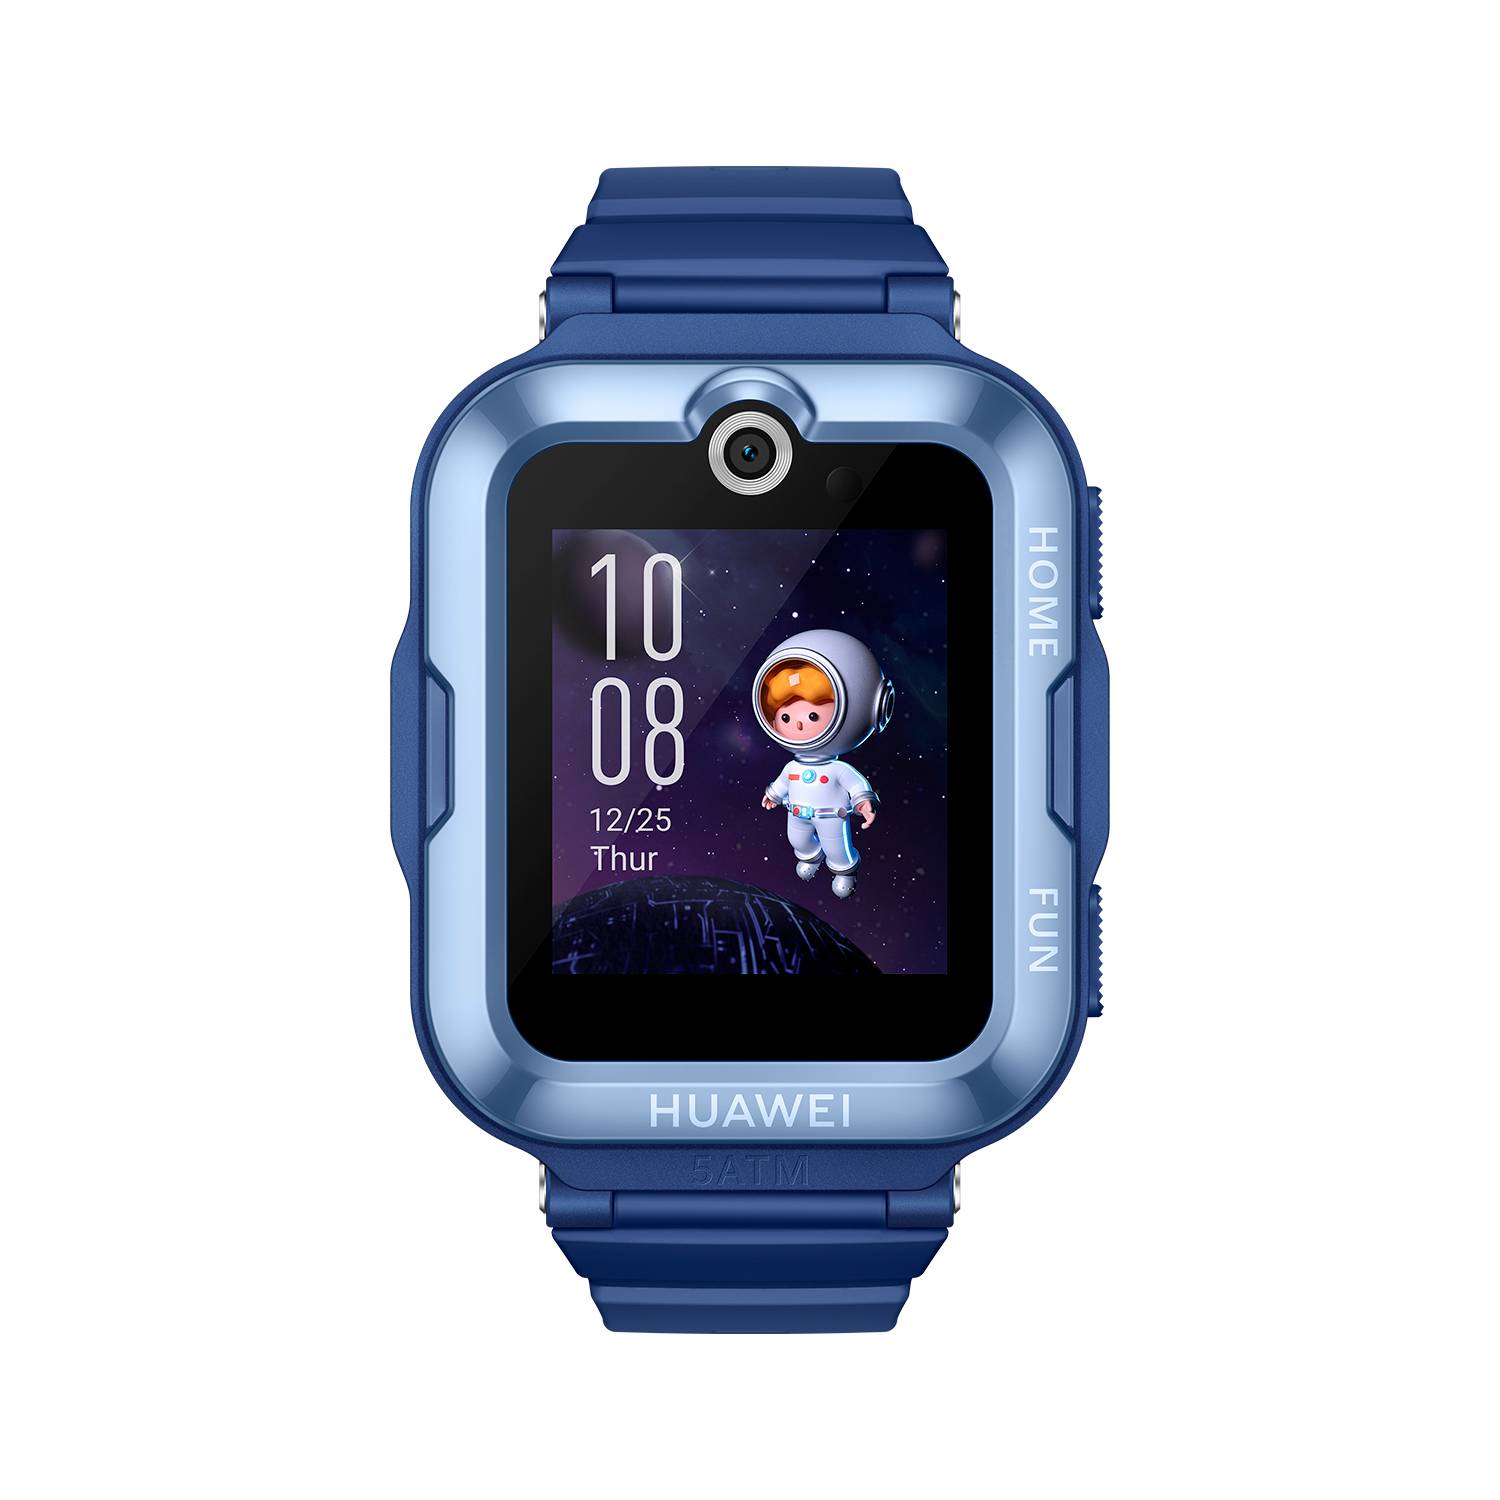 Smart watch Huawei Kids 4 Pro Reloj inteligente niños. Video llamadas en  alta definición. Sistema de posicionamiento integrado. Resistente al agua.  Compatible Android / iOS HUAWEI